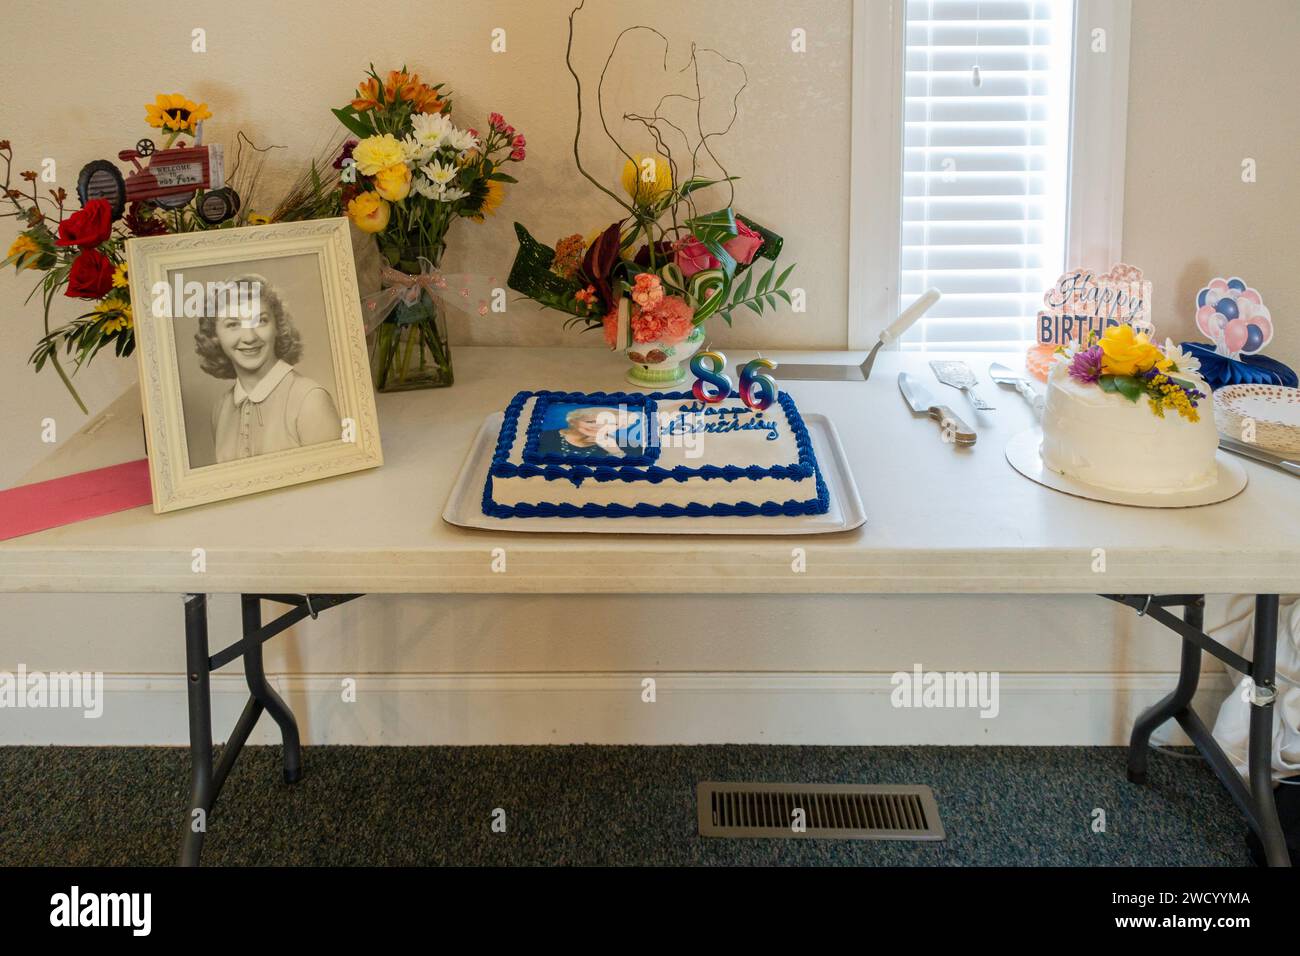 Une table de service avec deux gâteaux d'anniversaire, une photographie, des vases de fleurs et un joyeux anniversaire. USA.b Banque D'Images